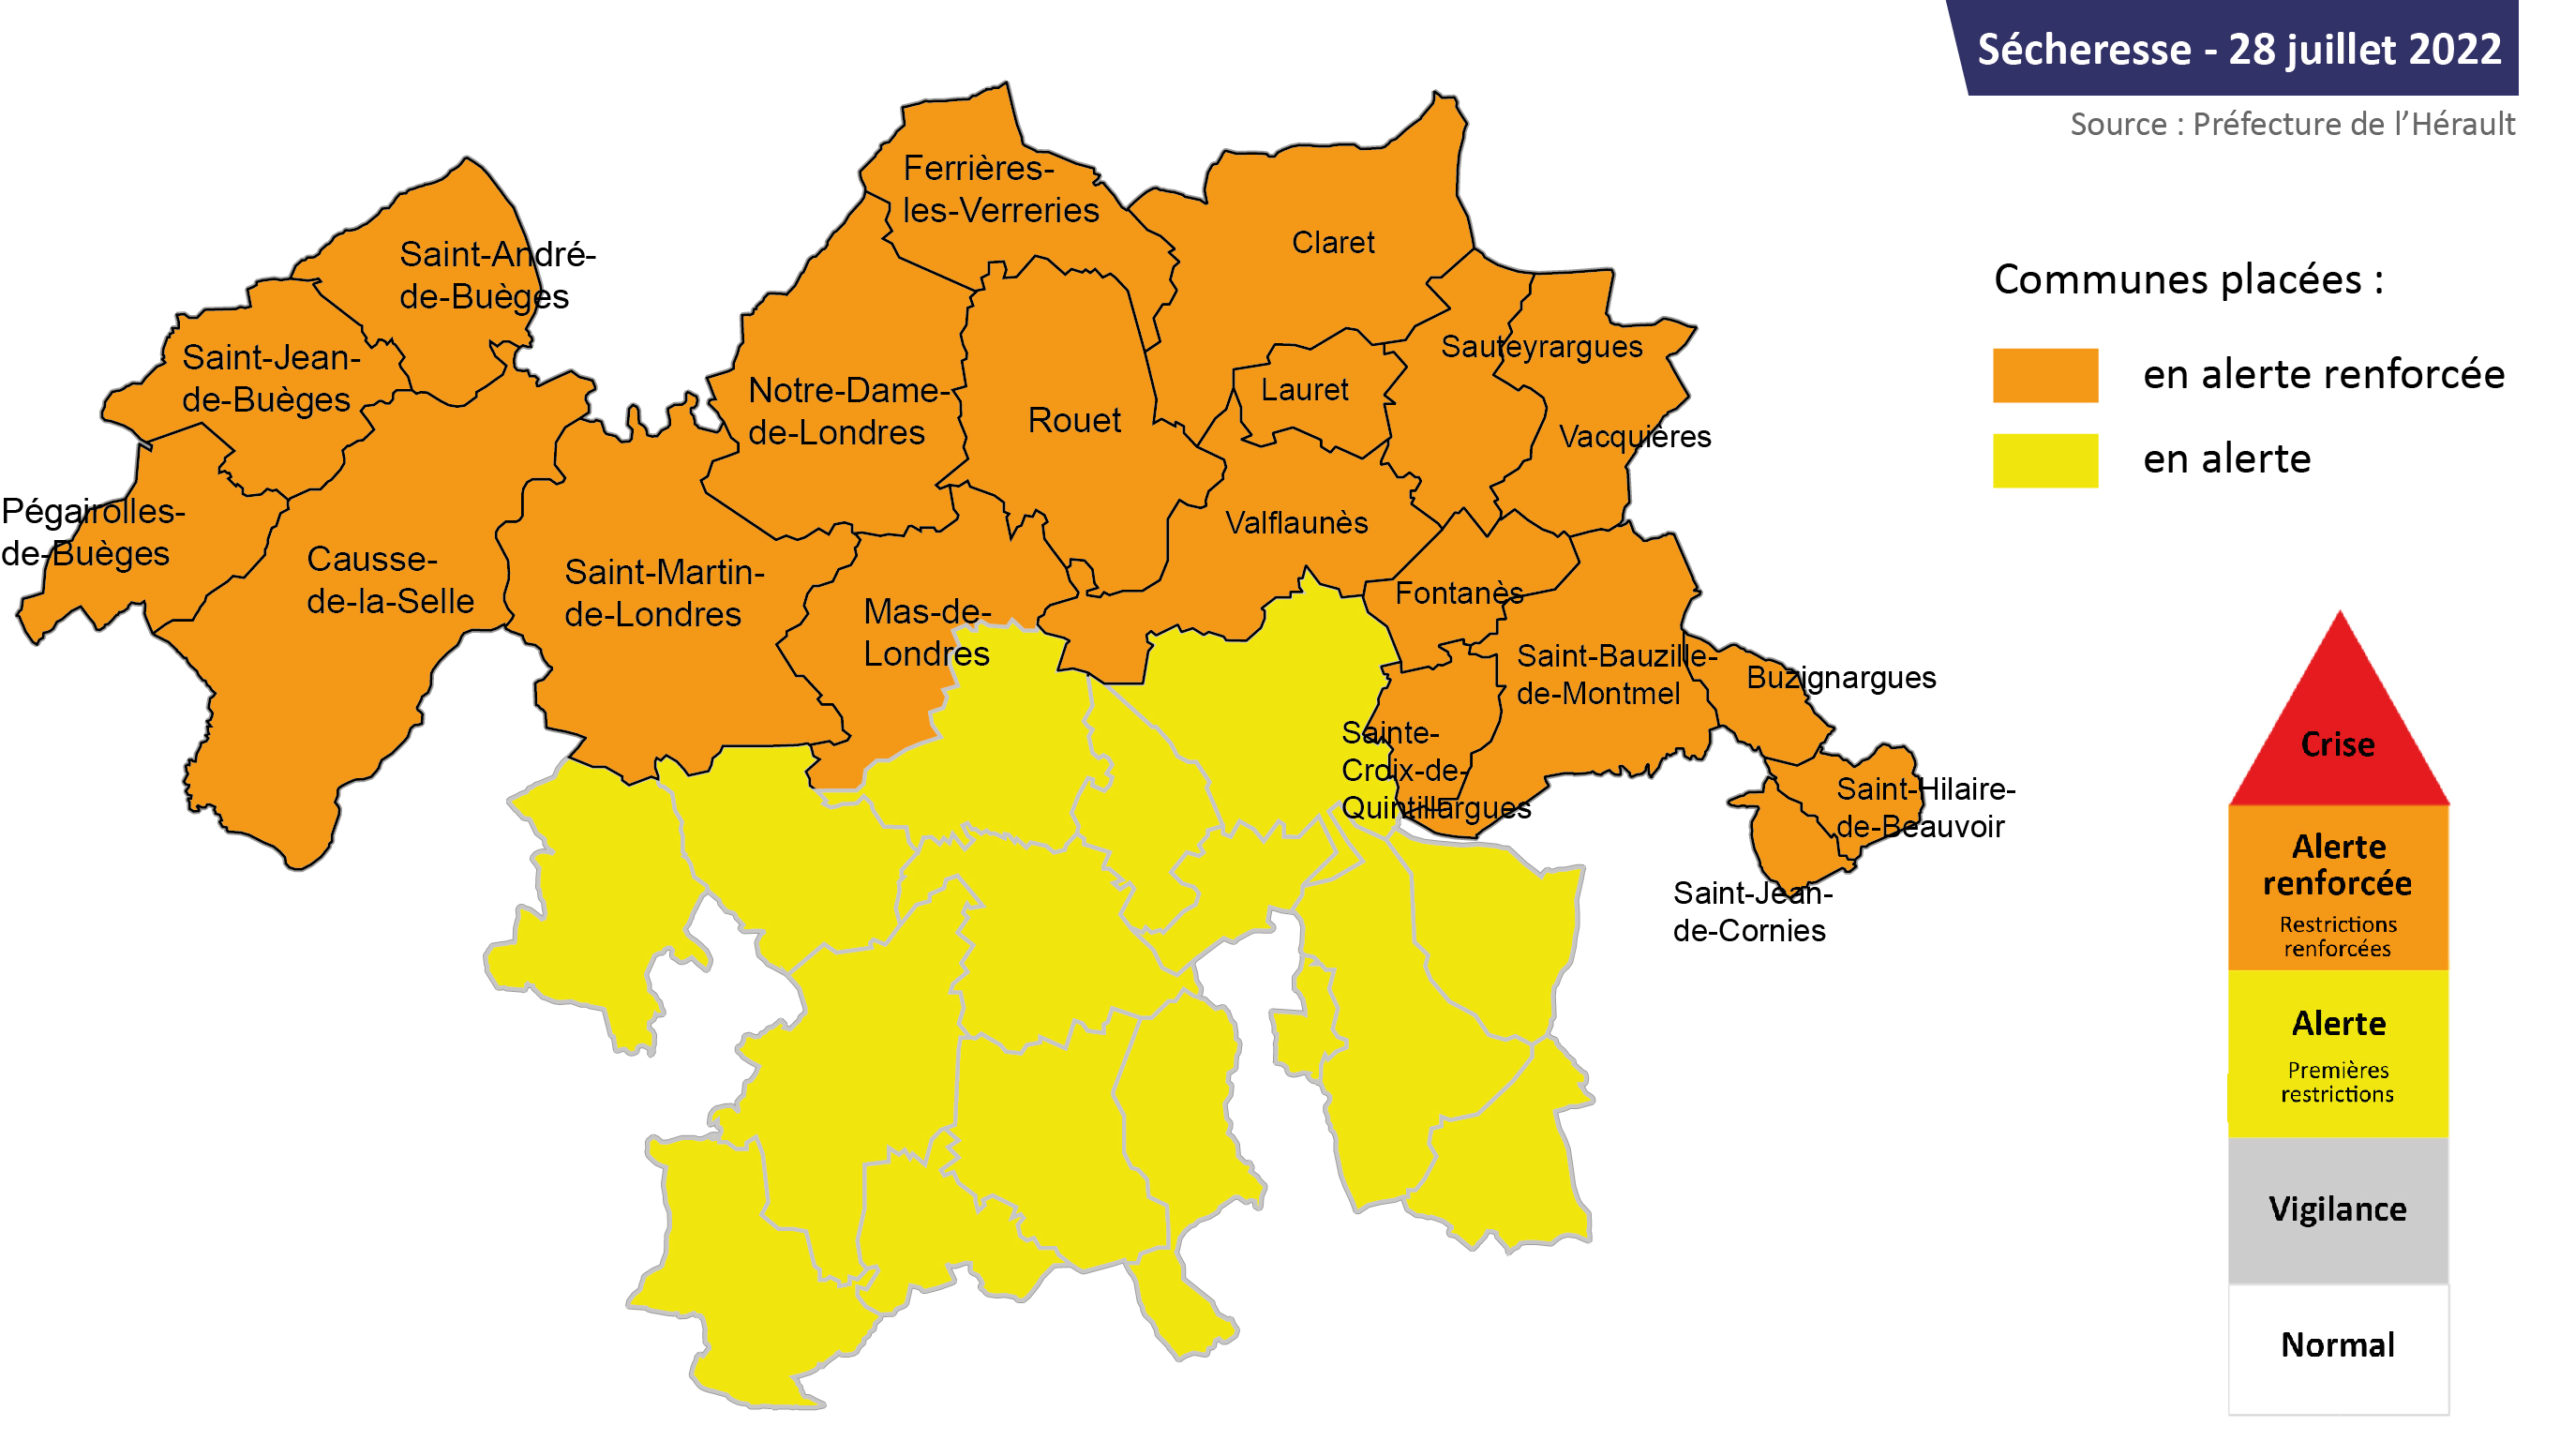 Sécheresse : carte des communes du territoire en alerte renforcée et en vigilance – 28 juillet 2022